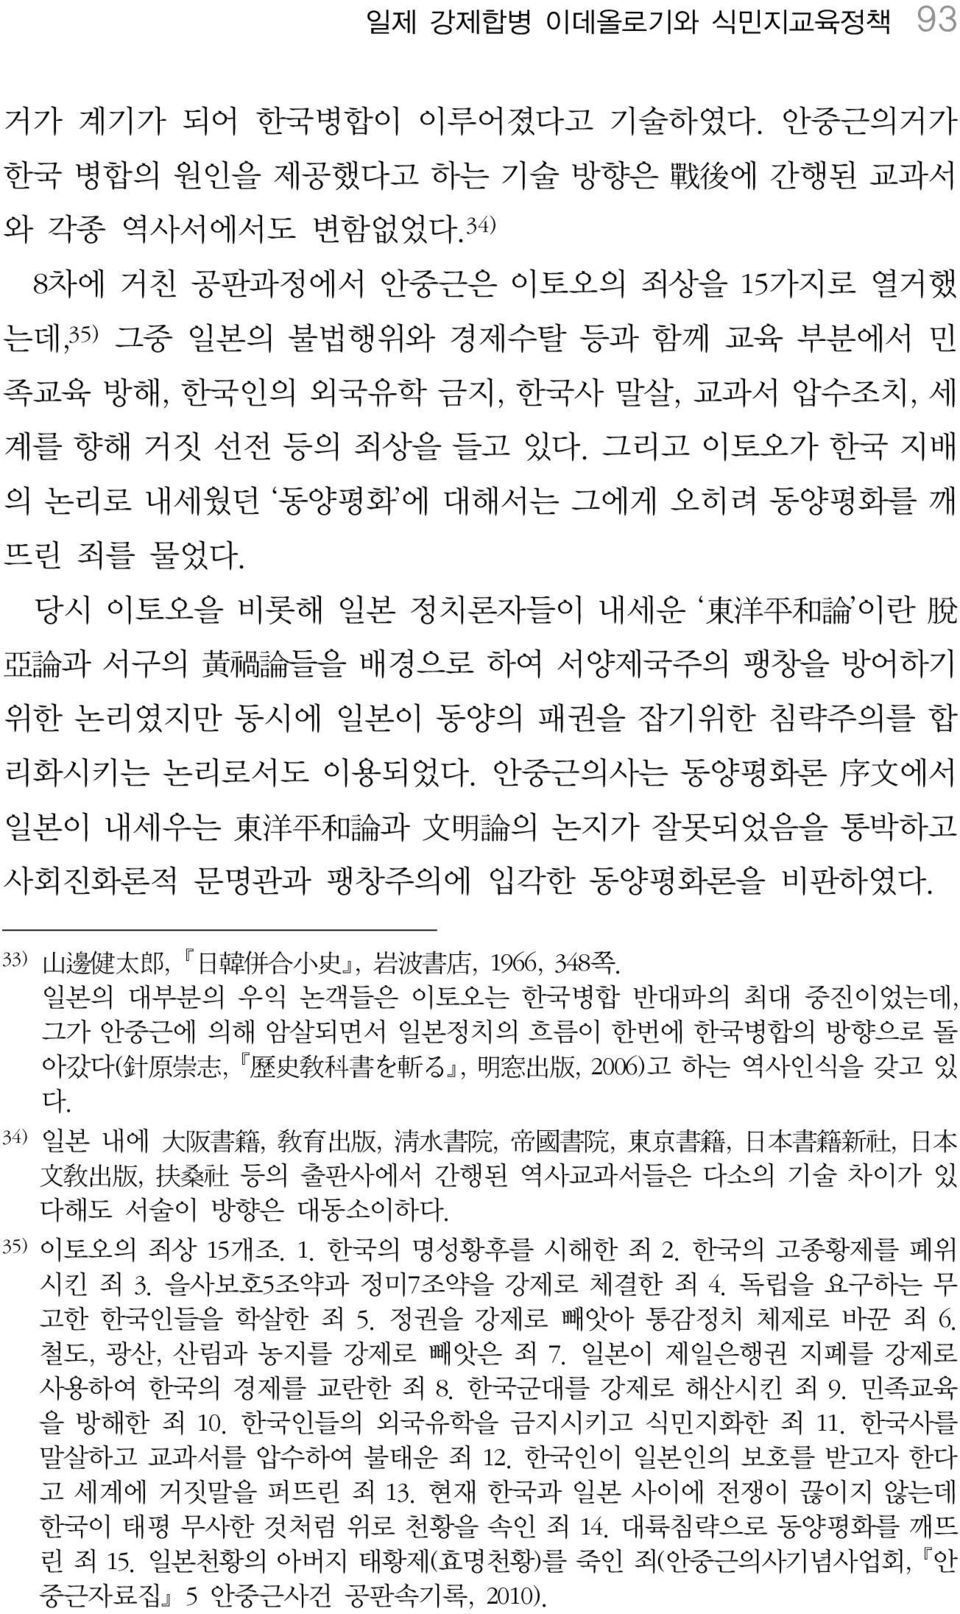 그리고 이토오가 한국 지배 의 논리로 내세웠던 동양평화 에 대해서는 그에게 오히려 동양평화를 깨 뜨린 죄를 물었다.